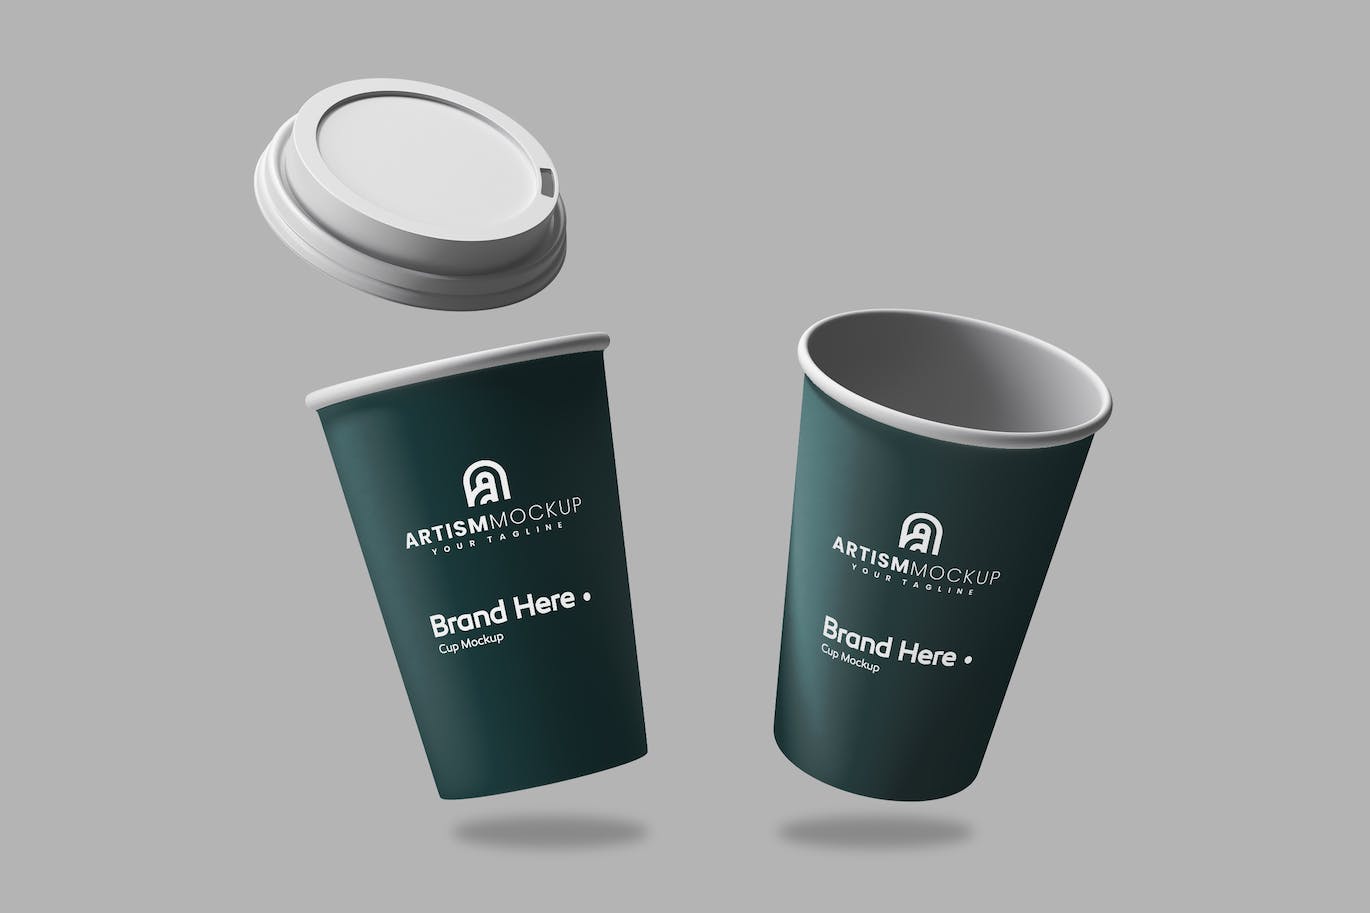 一次性纸咖啡杯品牌设计样机图 Paper Cup Mockup 样机素材 第1张